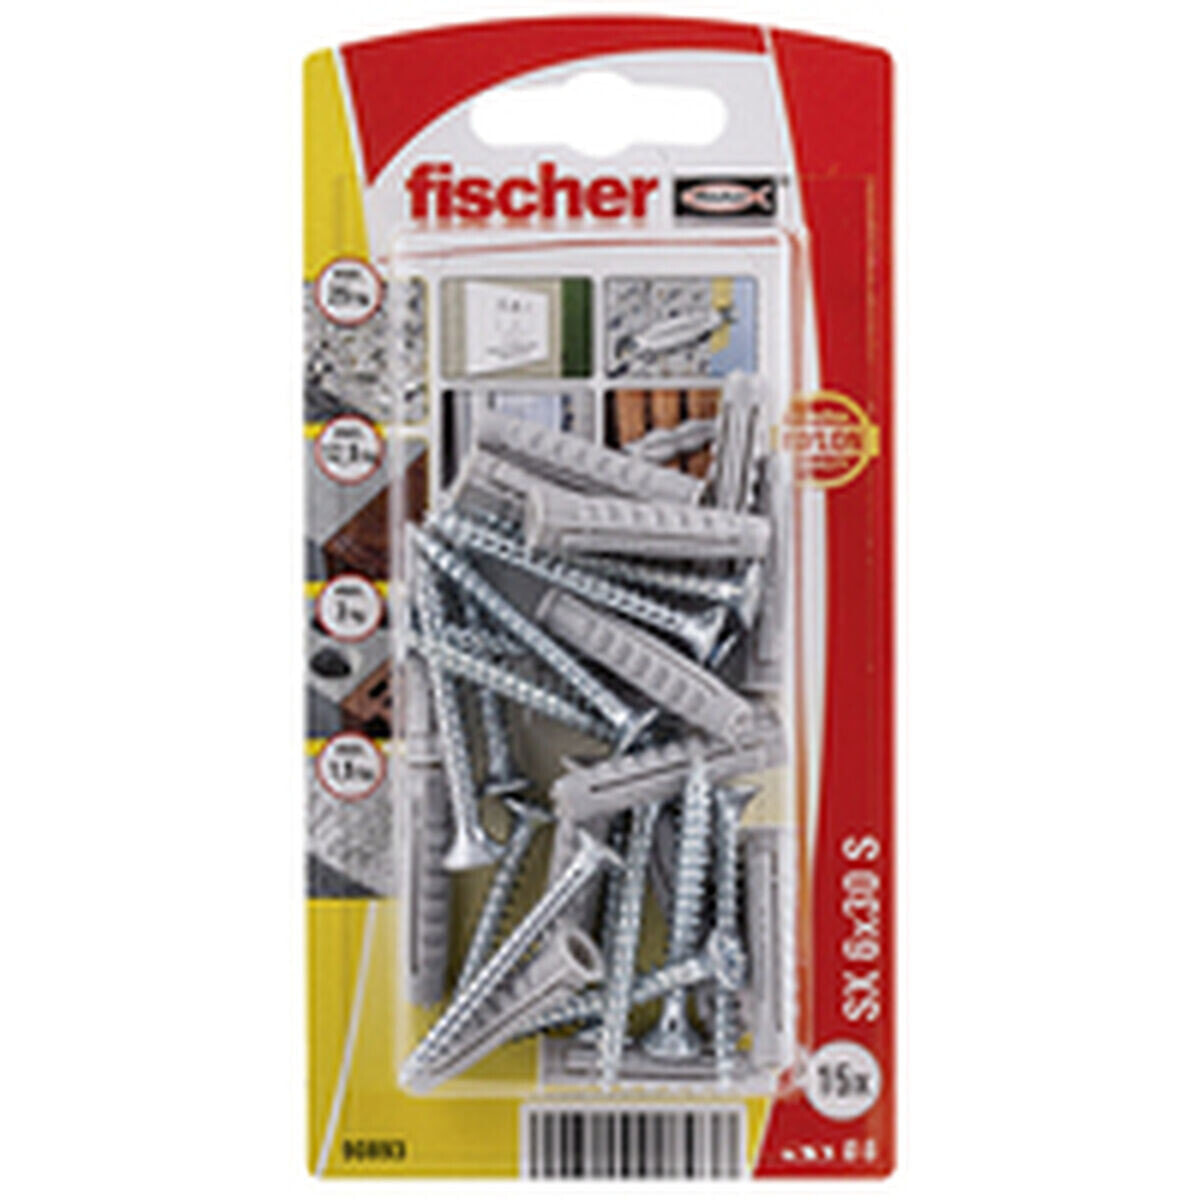 дюбеля и шурупы Fischer дюбеля и шурупы 15 штук (6 x 30 mm)